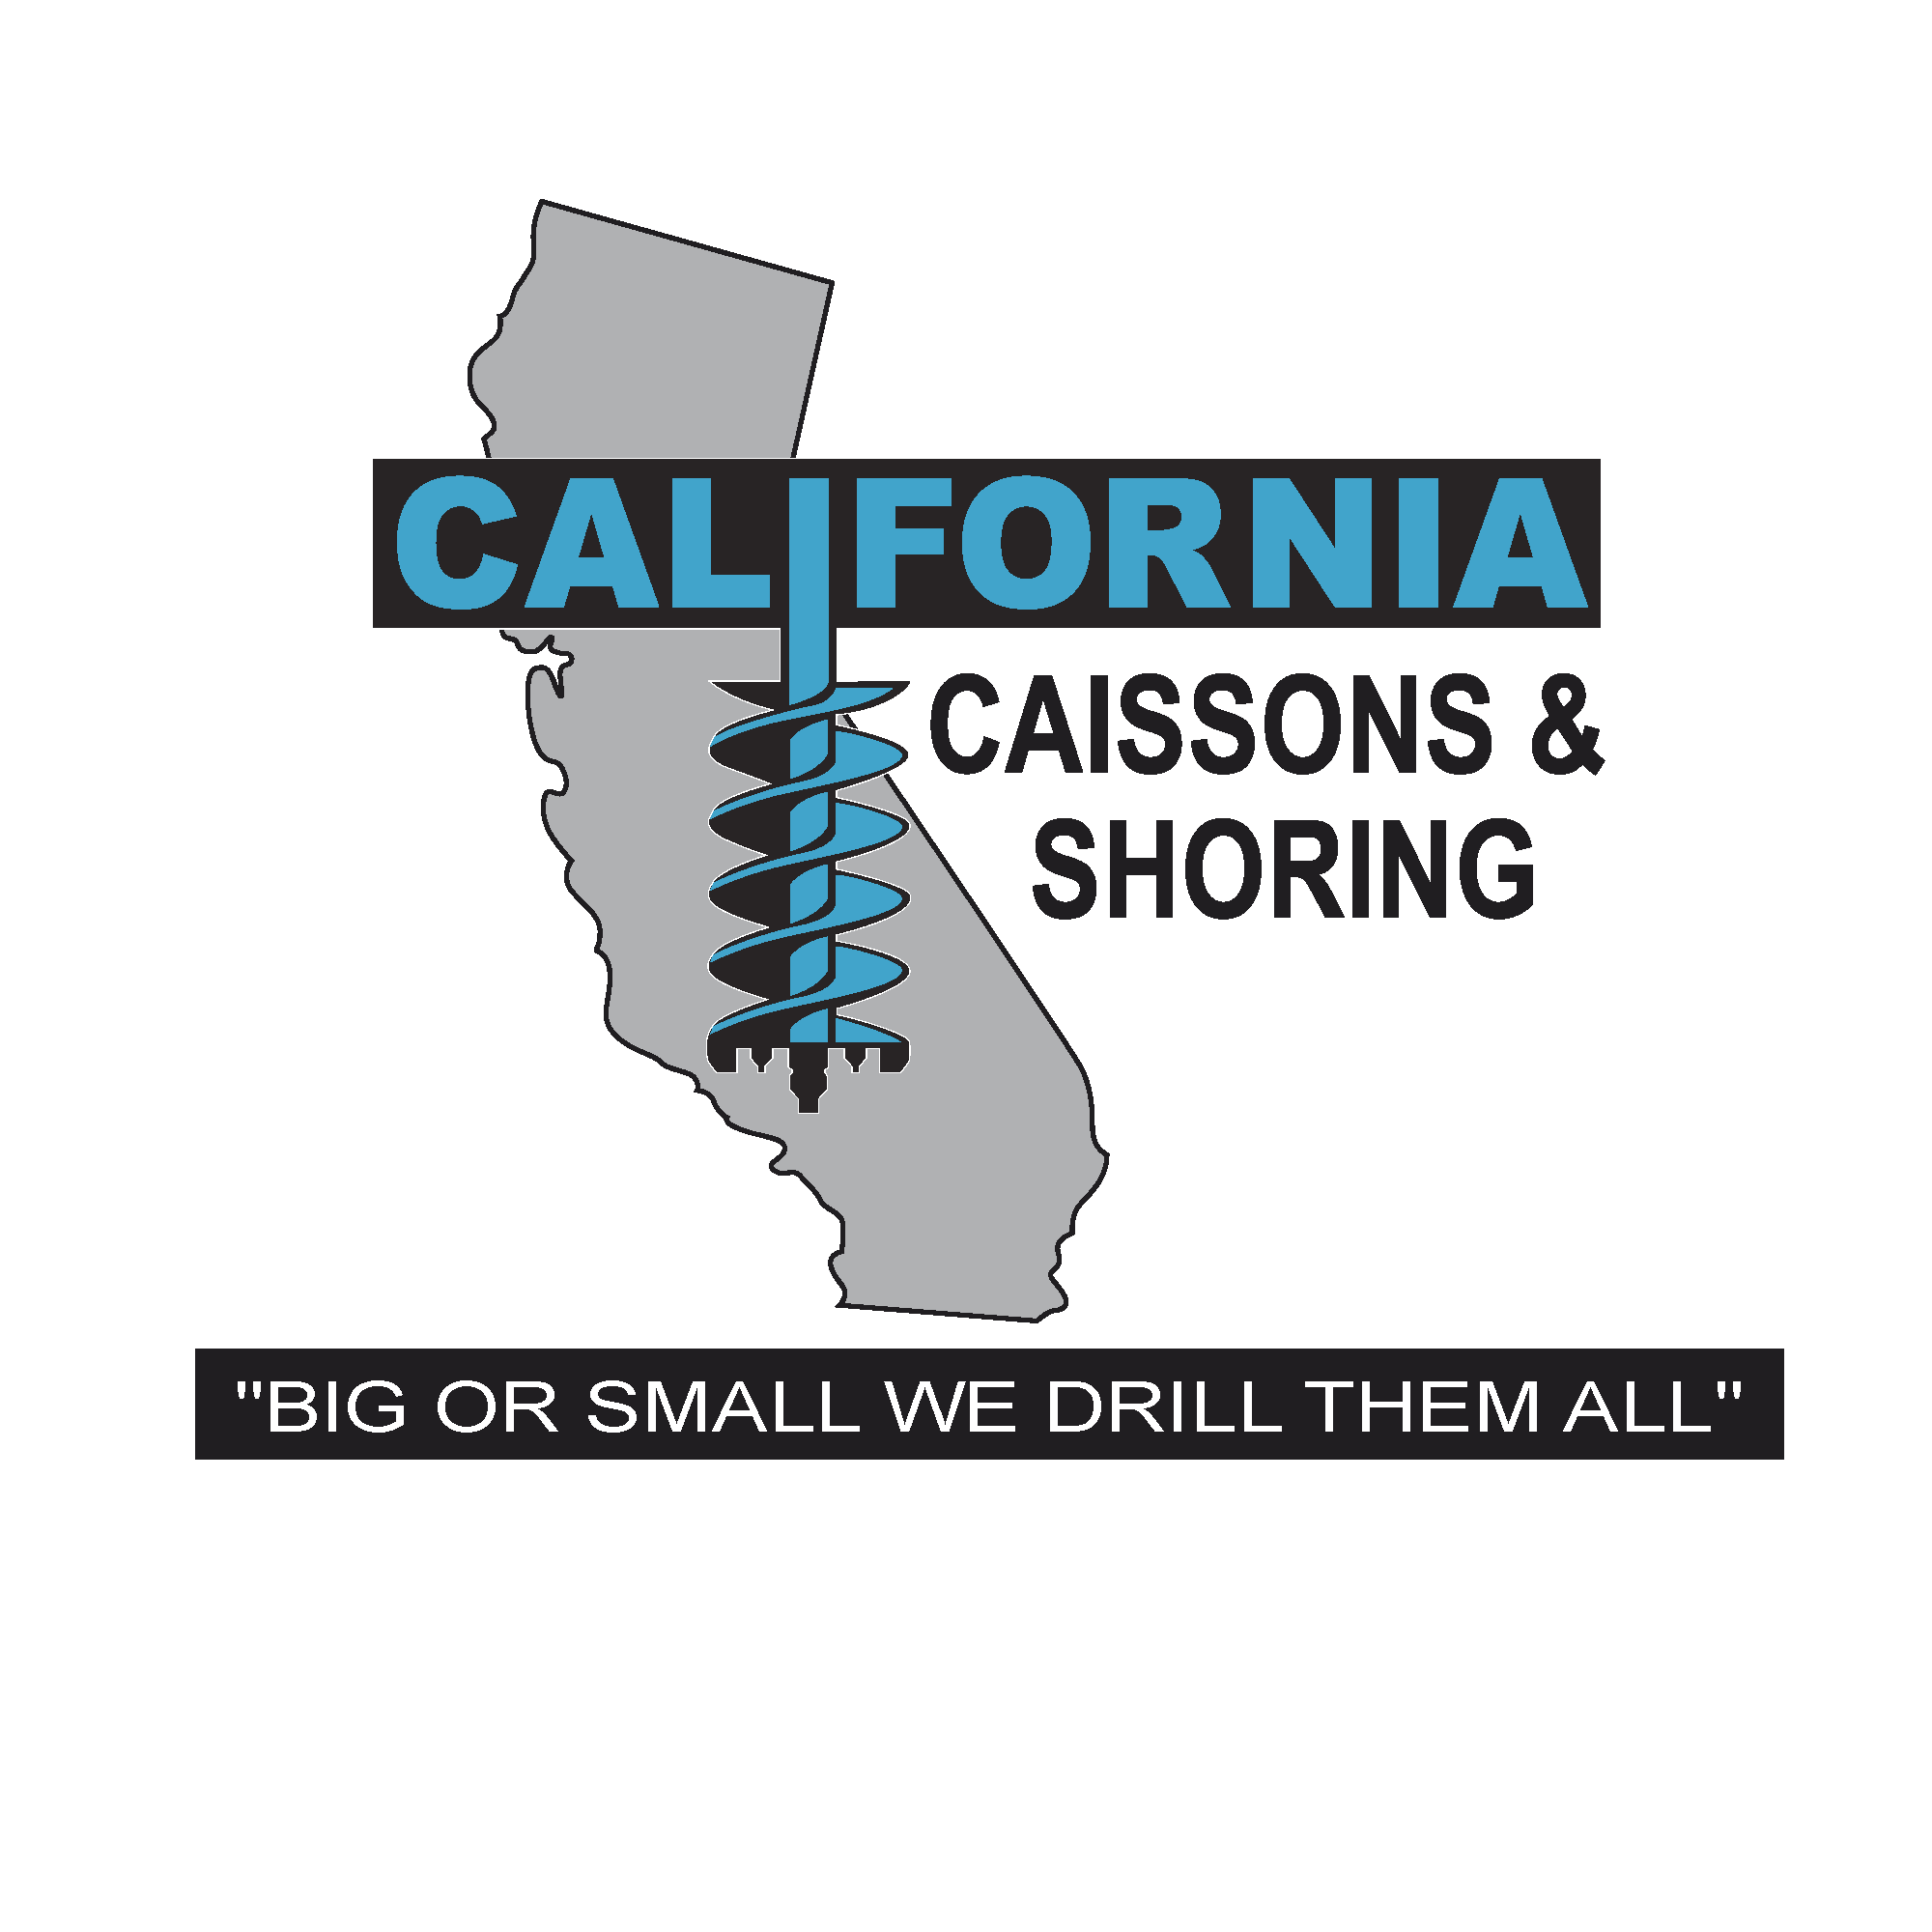 CALIFORNIA CAISSONS